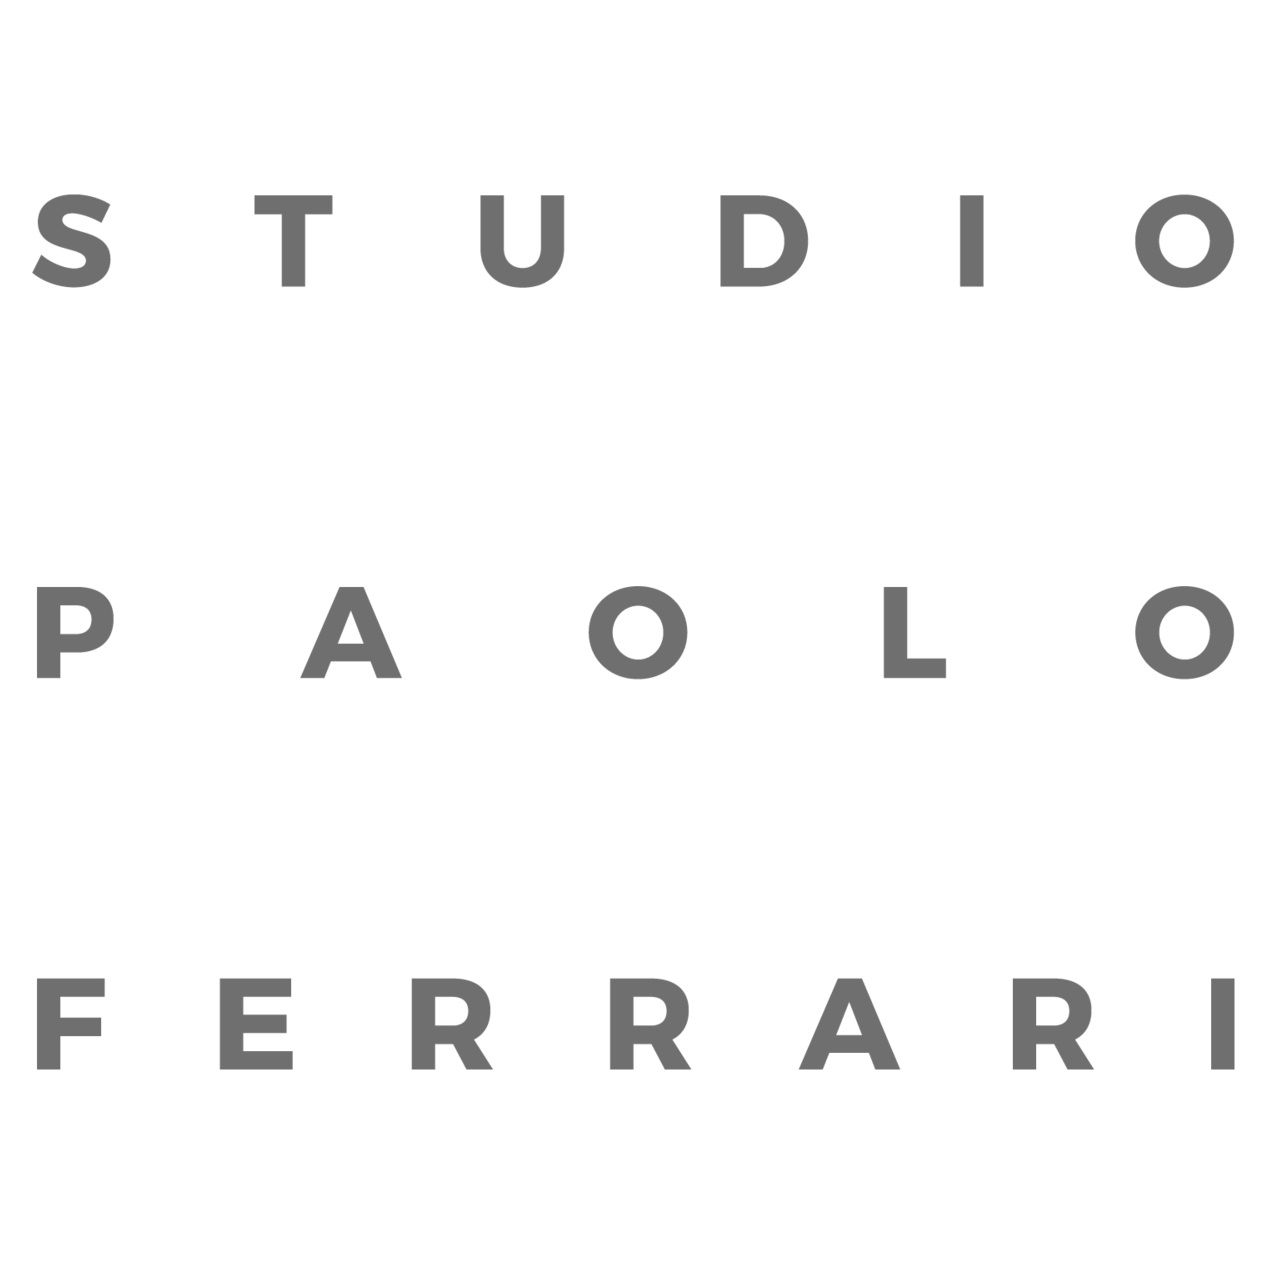 Studio Paolo Ferrari